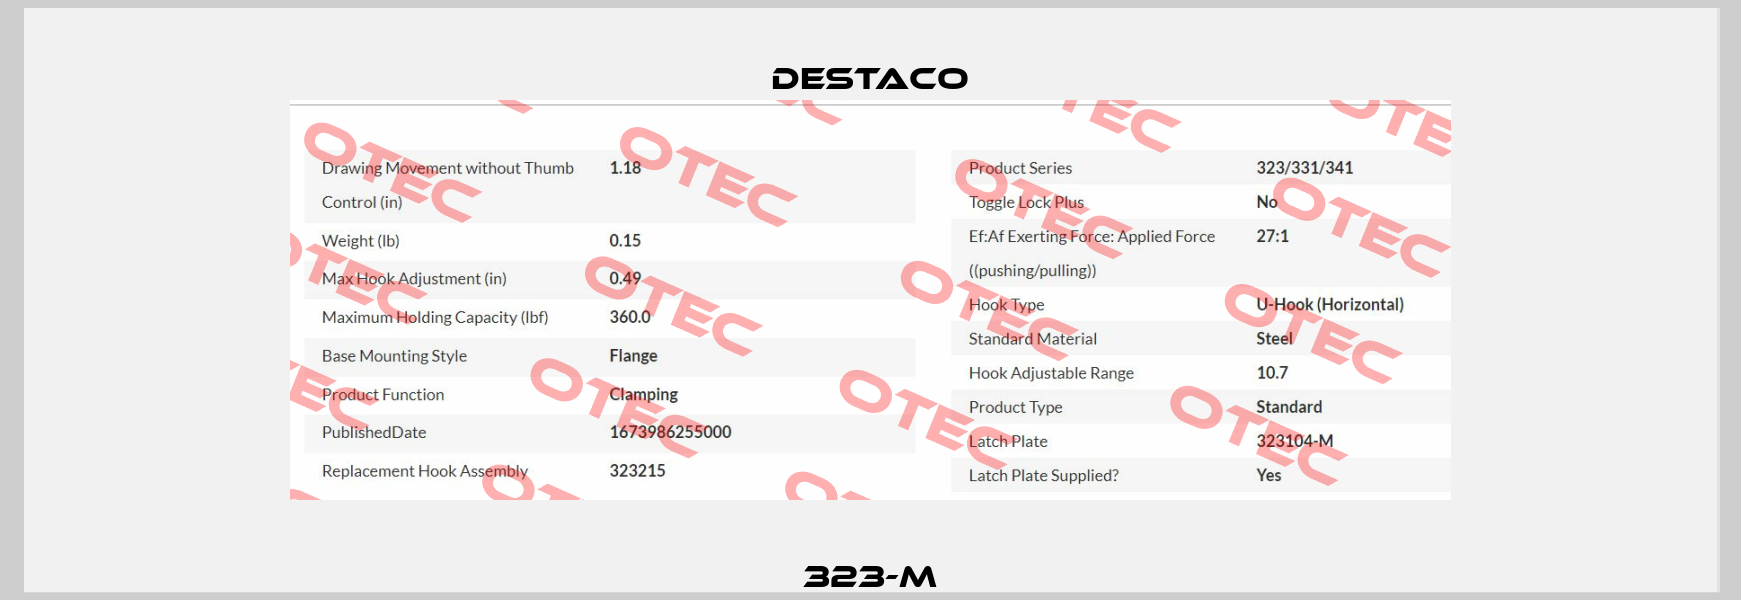 323-M Destaco